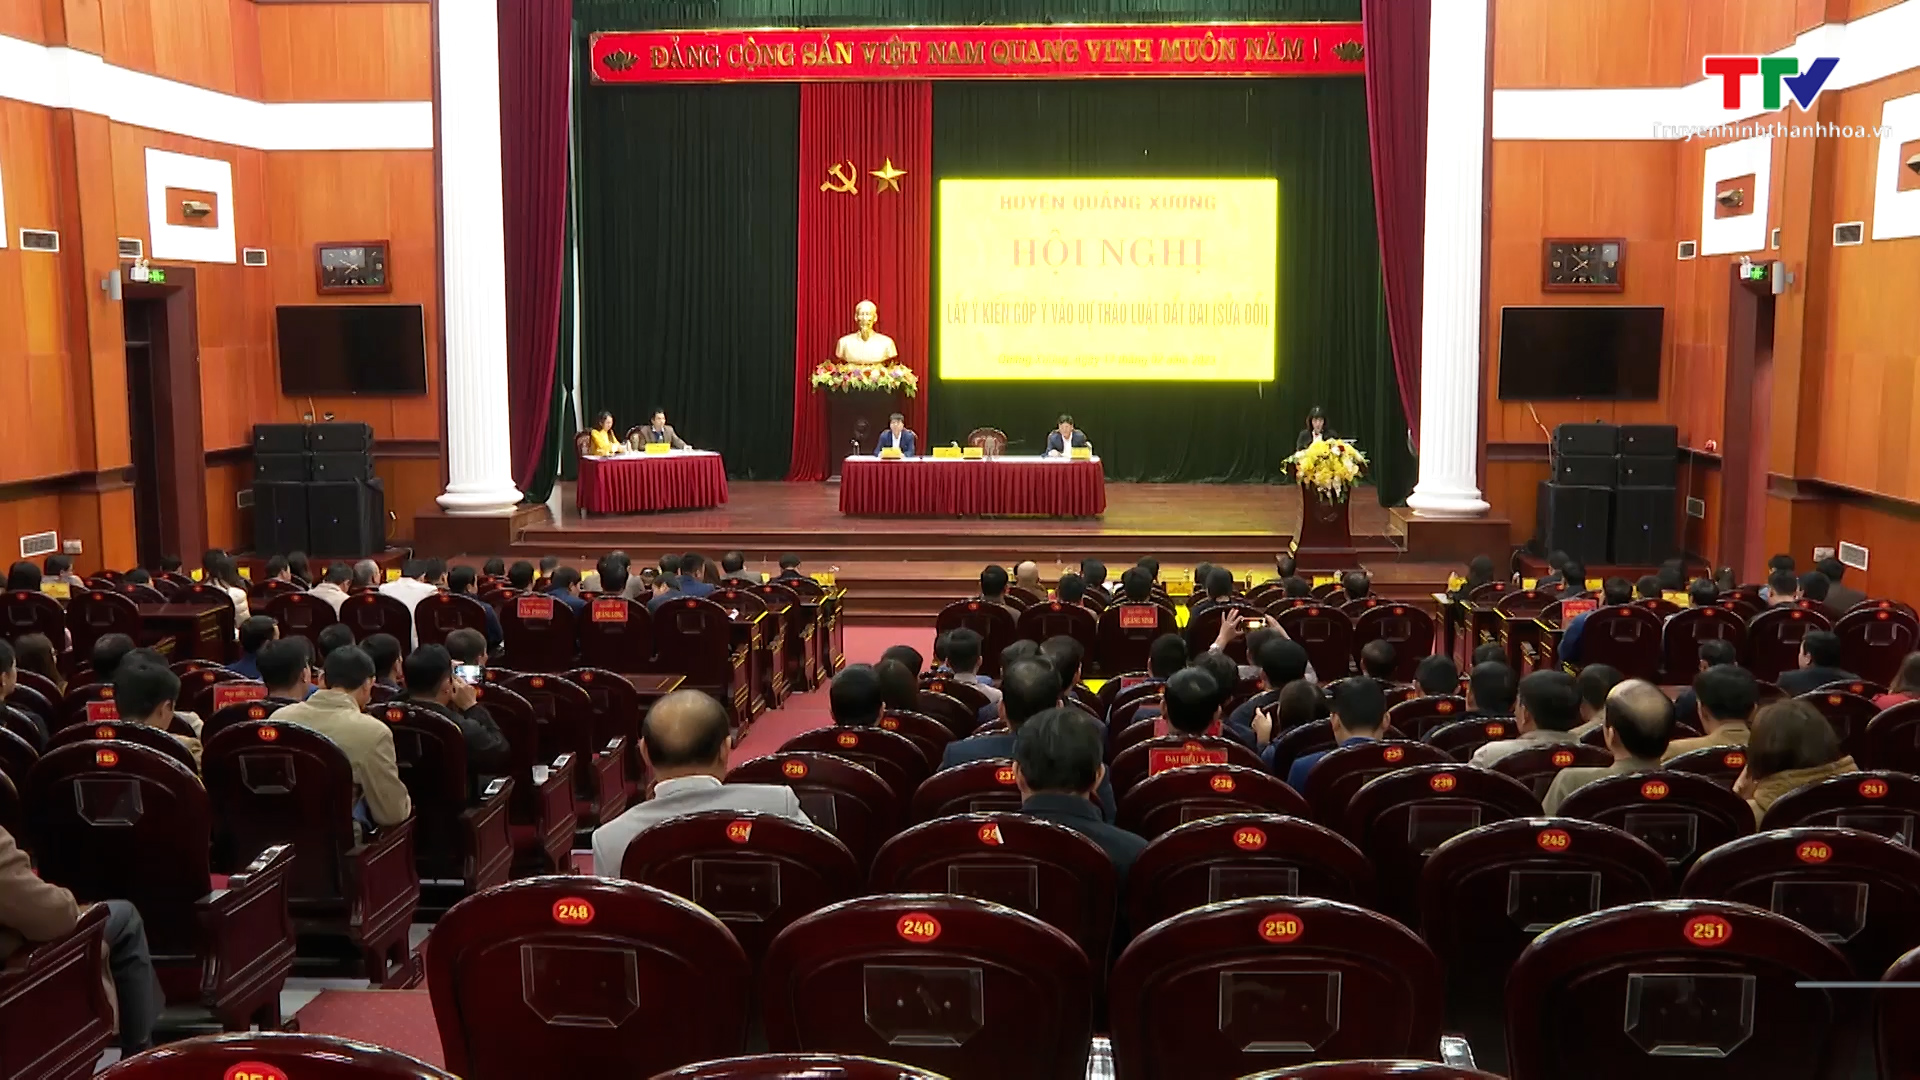 Huyện Quảng Xương tổ chức hội nghị lấy ý kiến góp ý vào dự thảo luật đất đai (sửa đổi) - Ảnh 2.